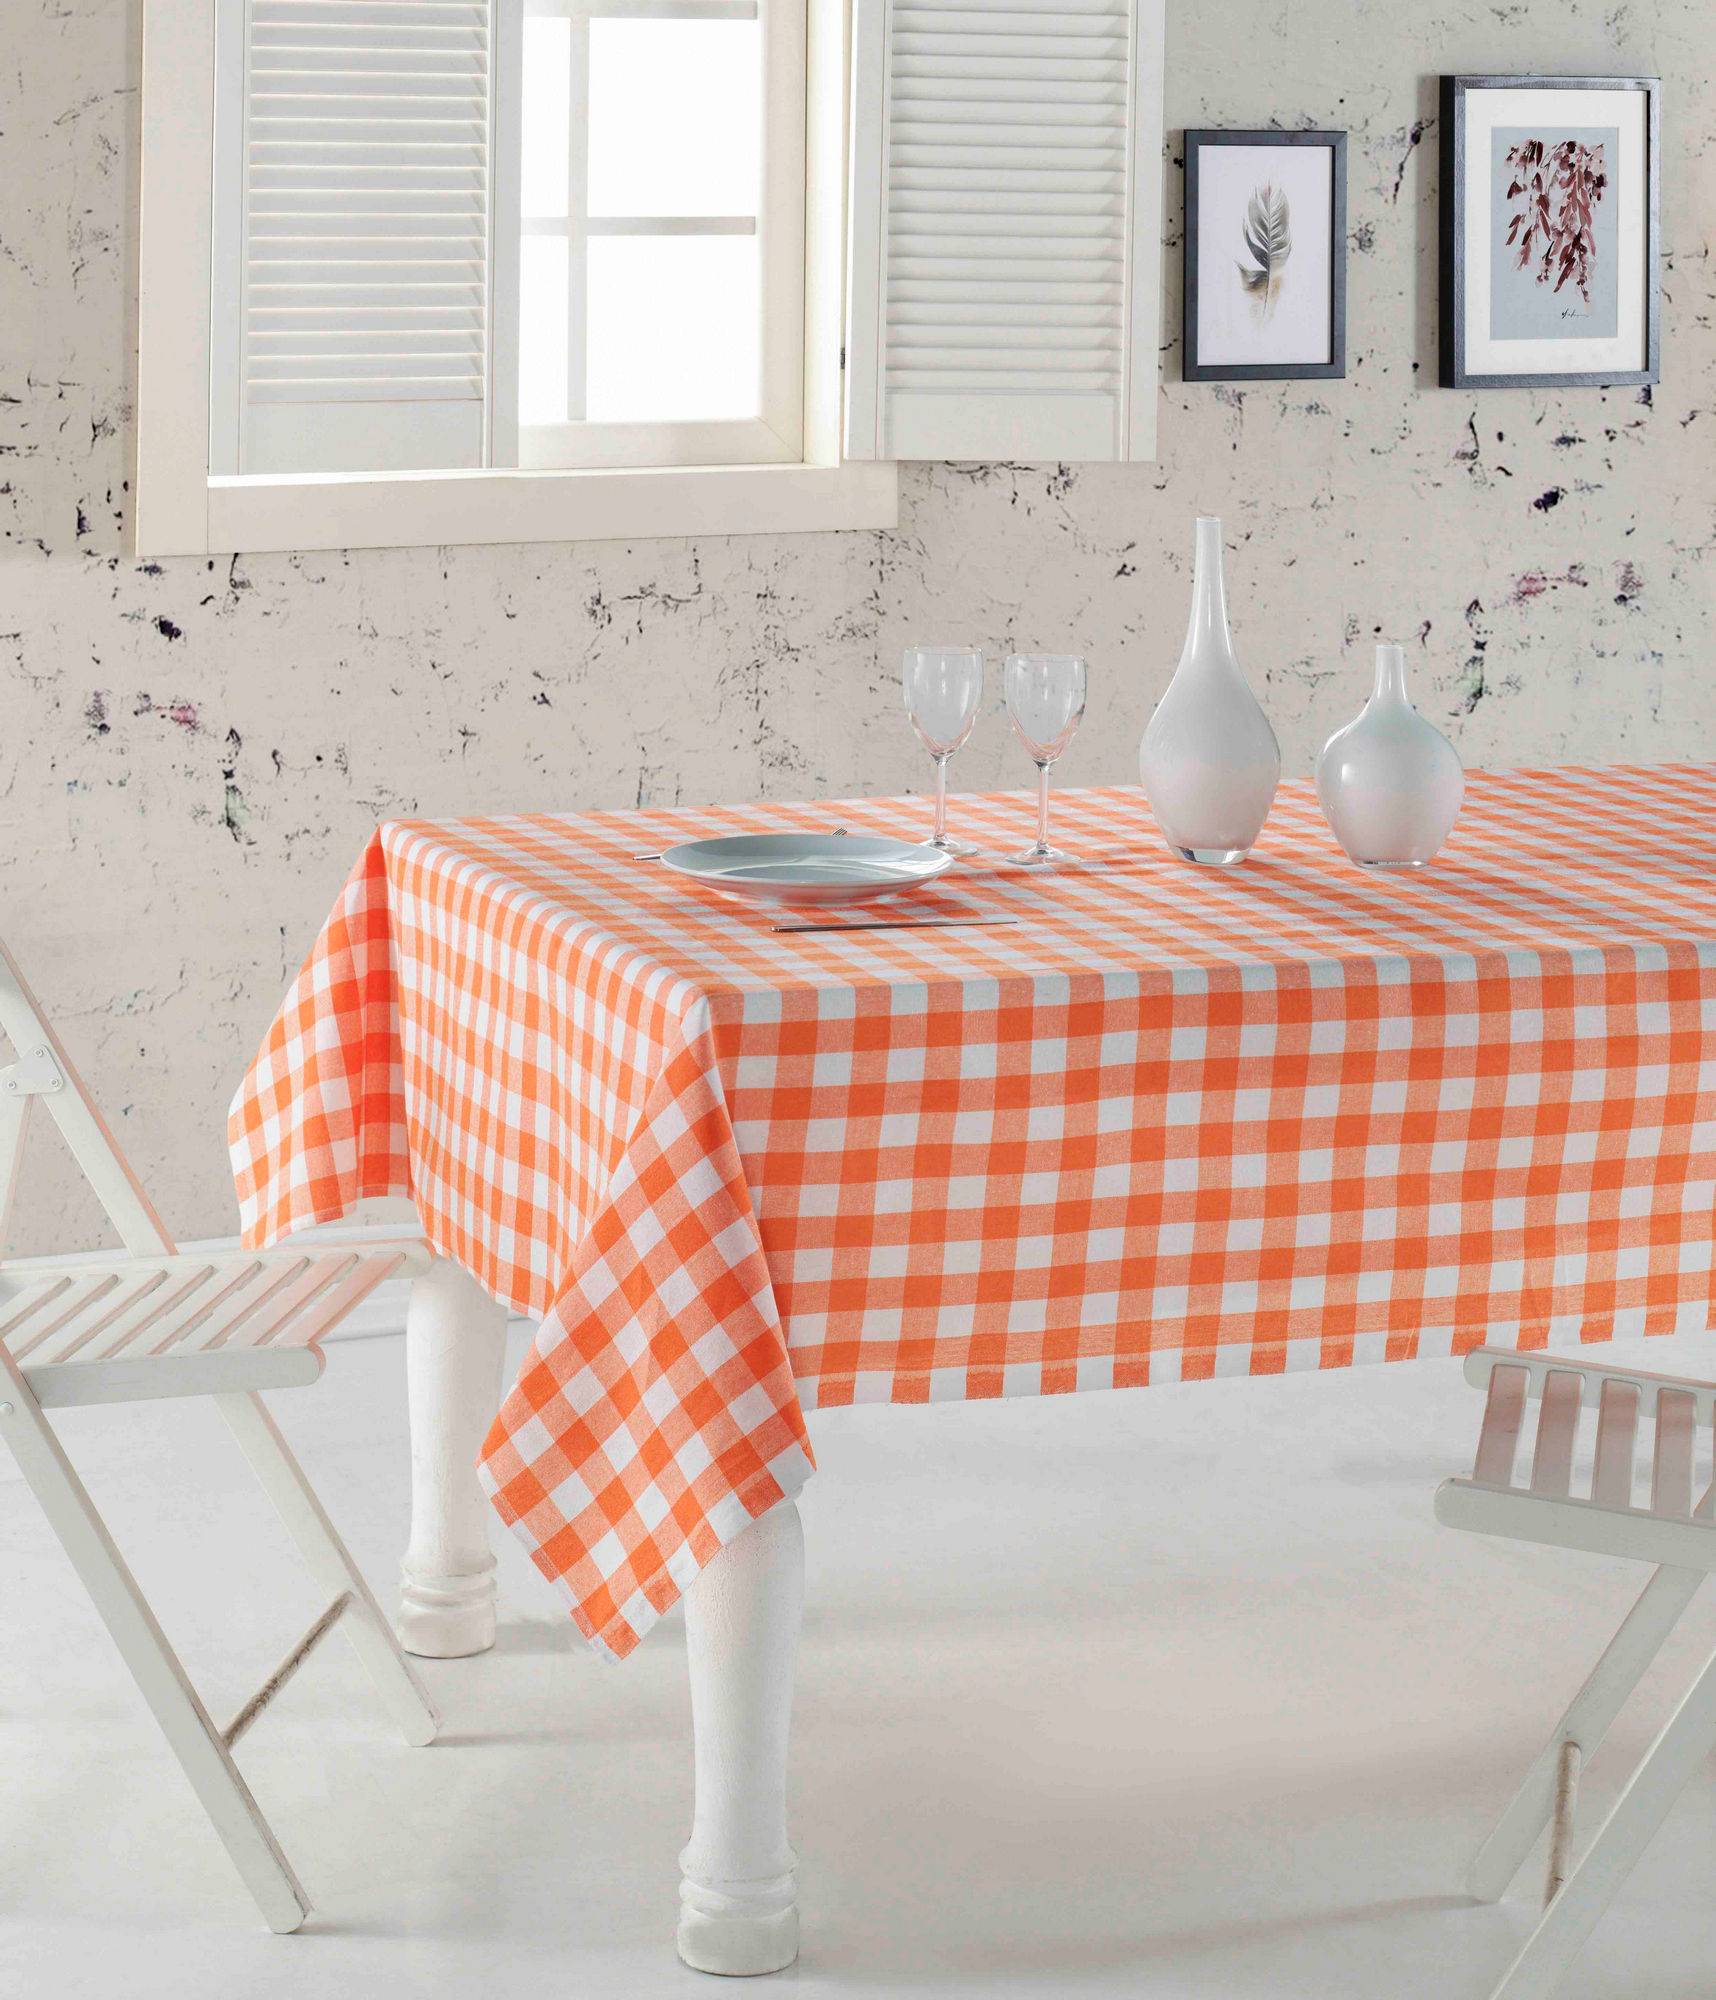 Brunier Tischdecke 160 x 160 cm Karomuster in Orange und Weiß